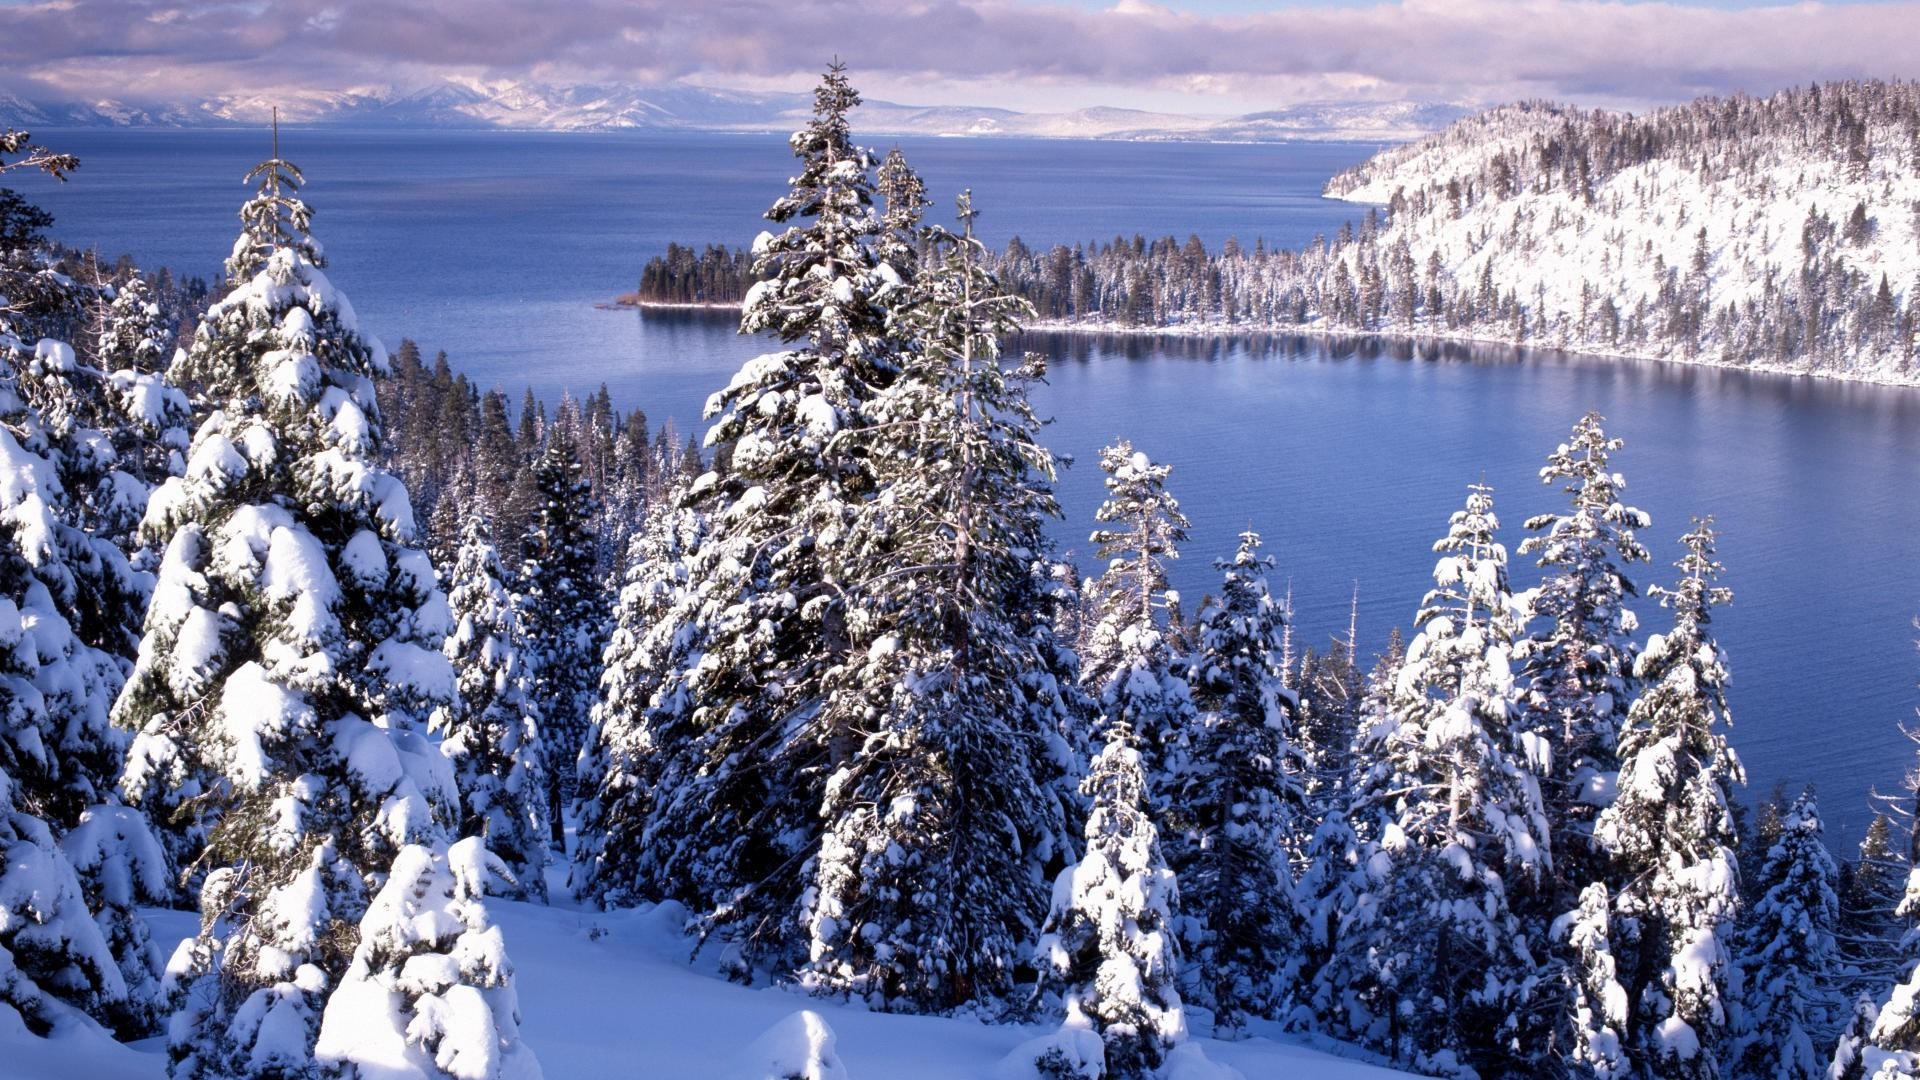 Lake Tahoe, Winter wallpaper, Snowy landscapes, Holiday season, 1920x1080 Full HD Desktop